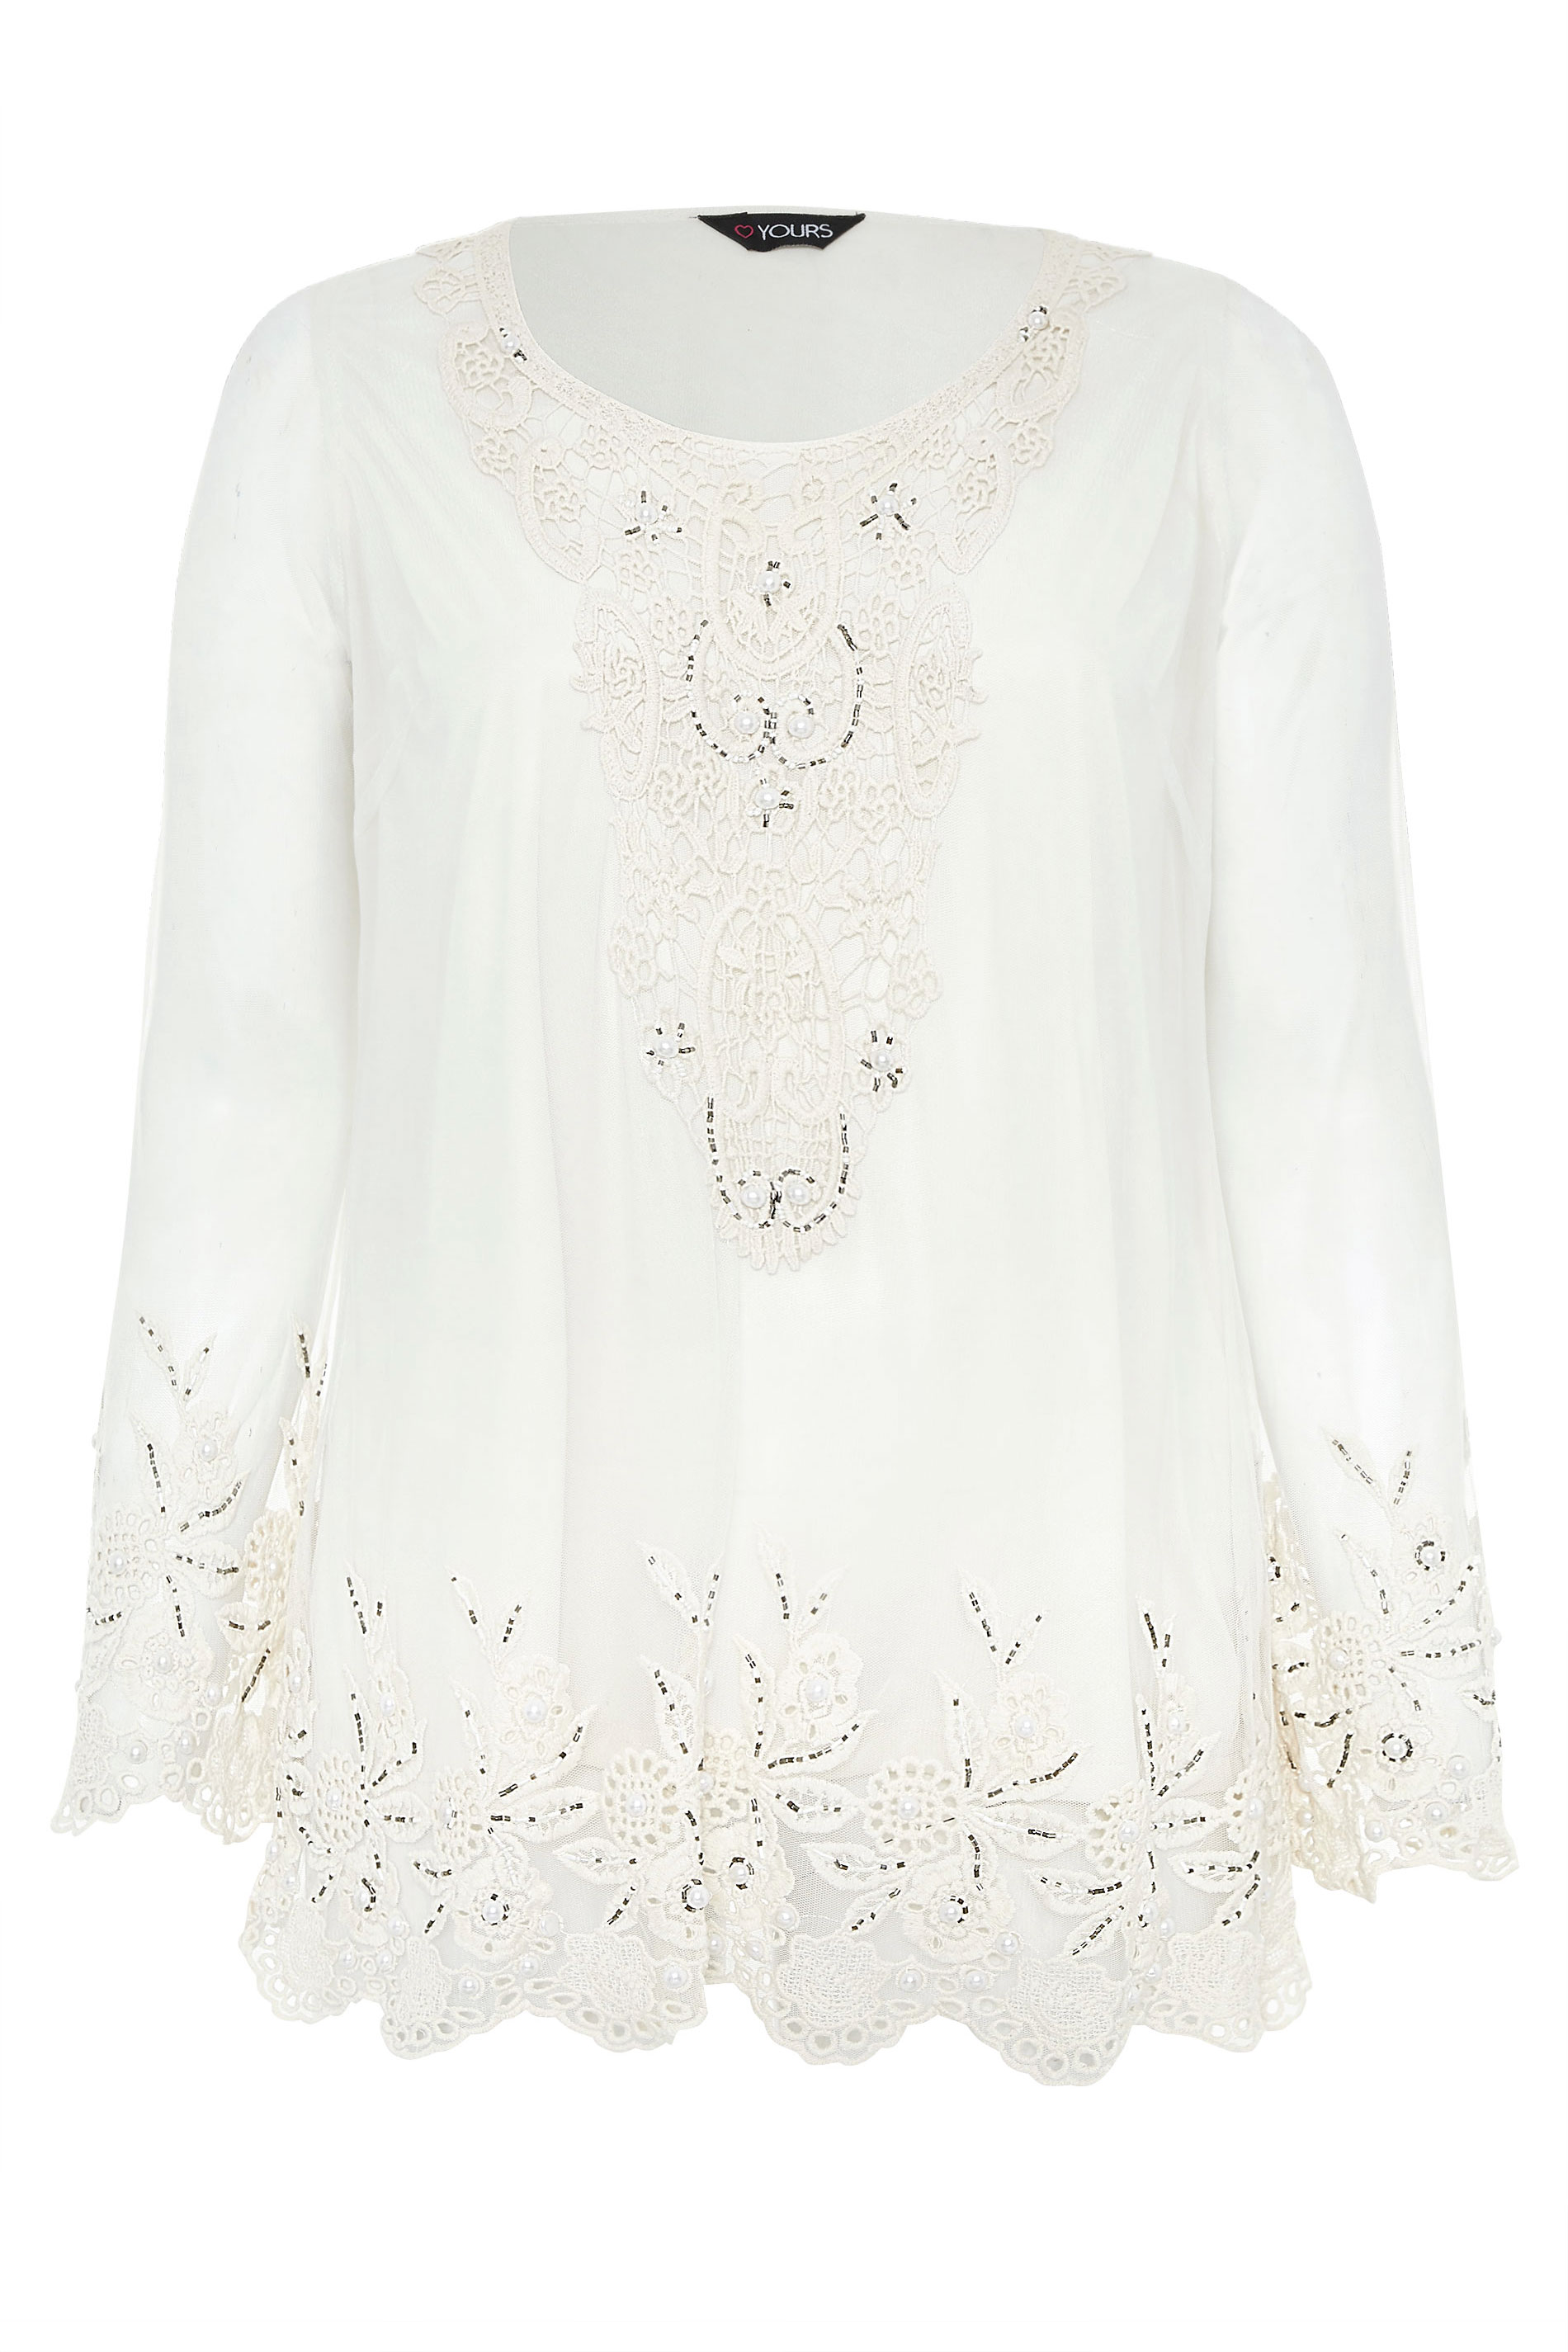 White Lace Embellished Tunic | Yours Clothing